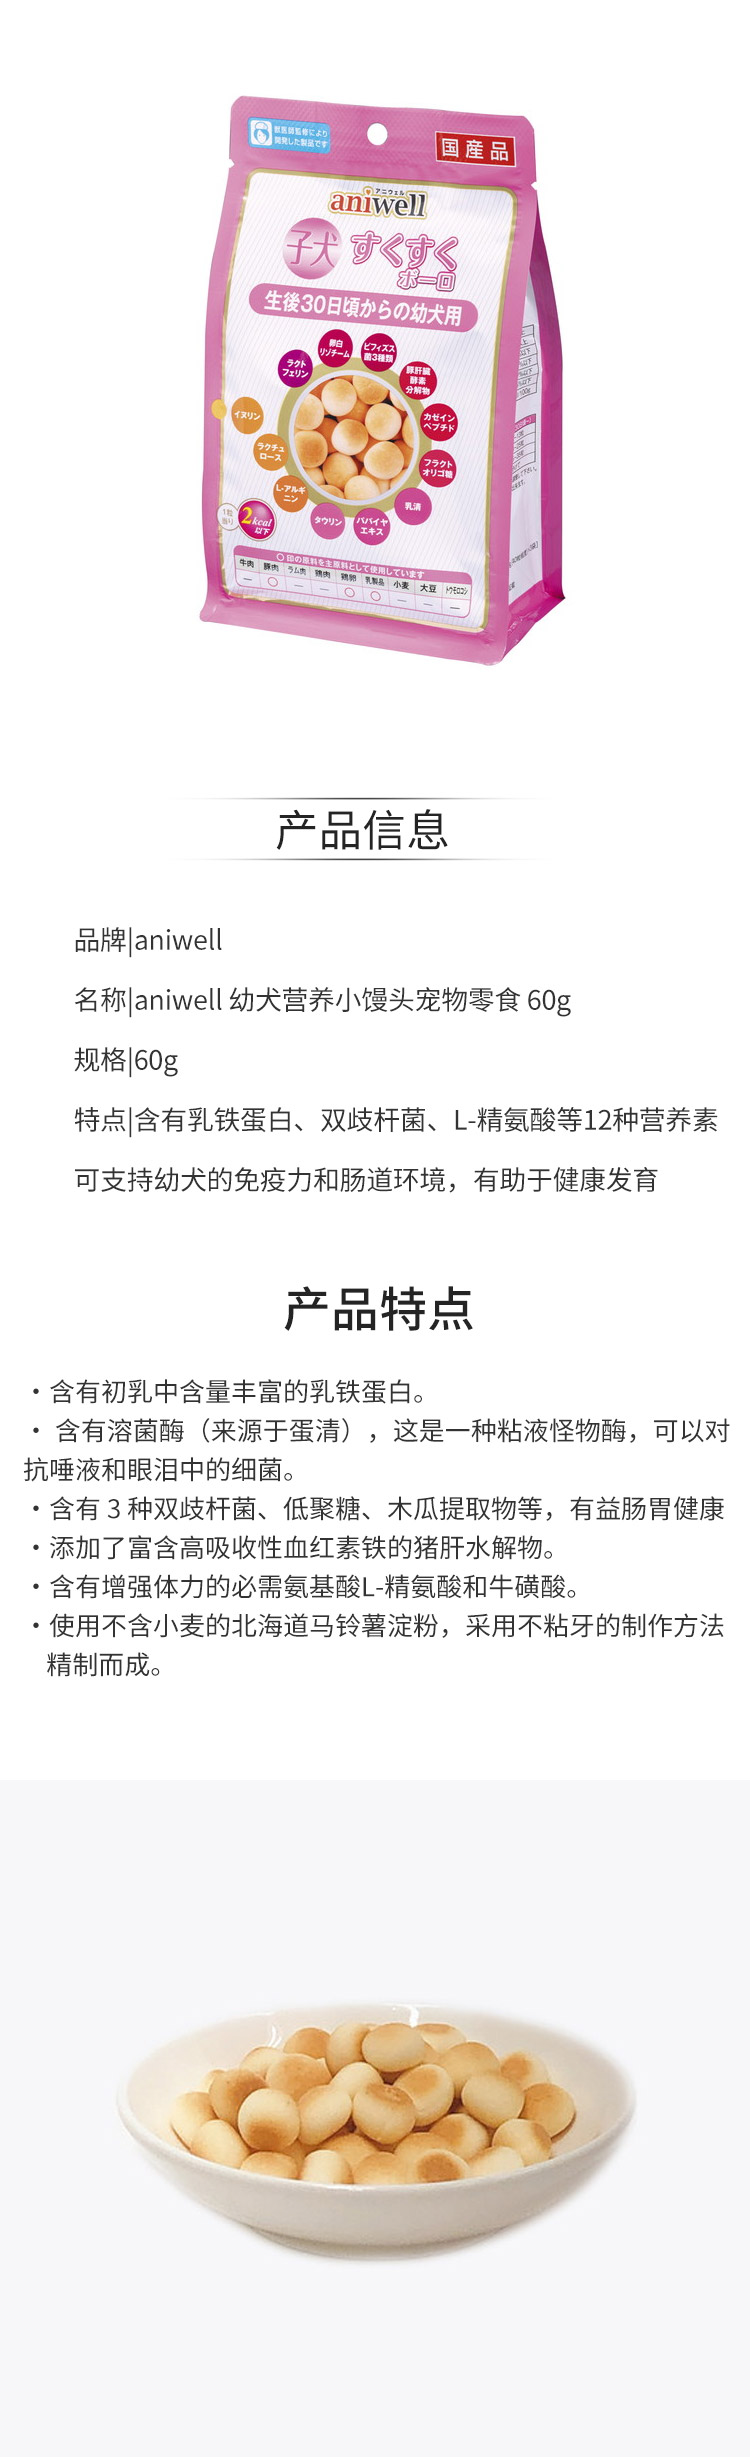 【日版】aniwell-幼犬营养小馒头宠物狗狗零食-60g.jpg